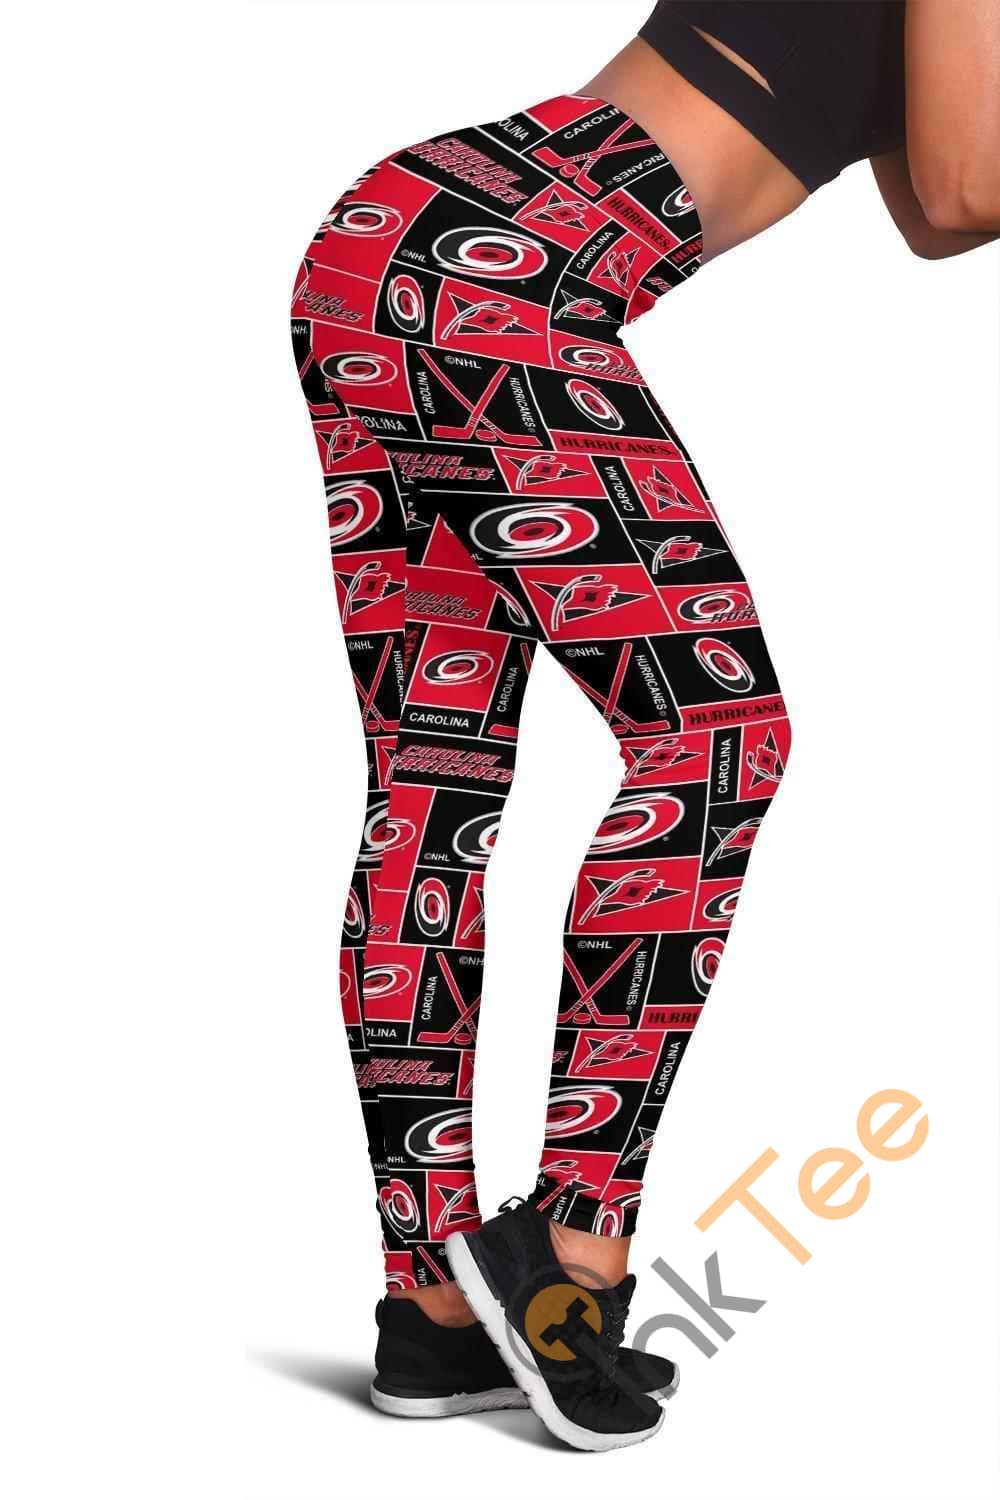 Inktee Store - Carolina Hurricanes Women'S 3D All Over Print For Yoga Fitness Women'S Leggings Image